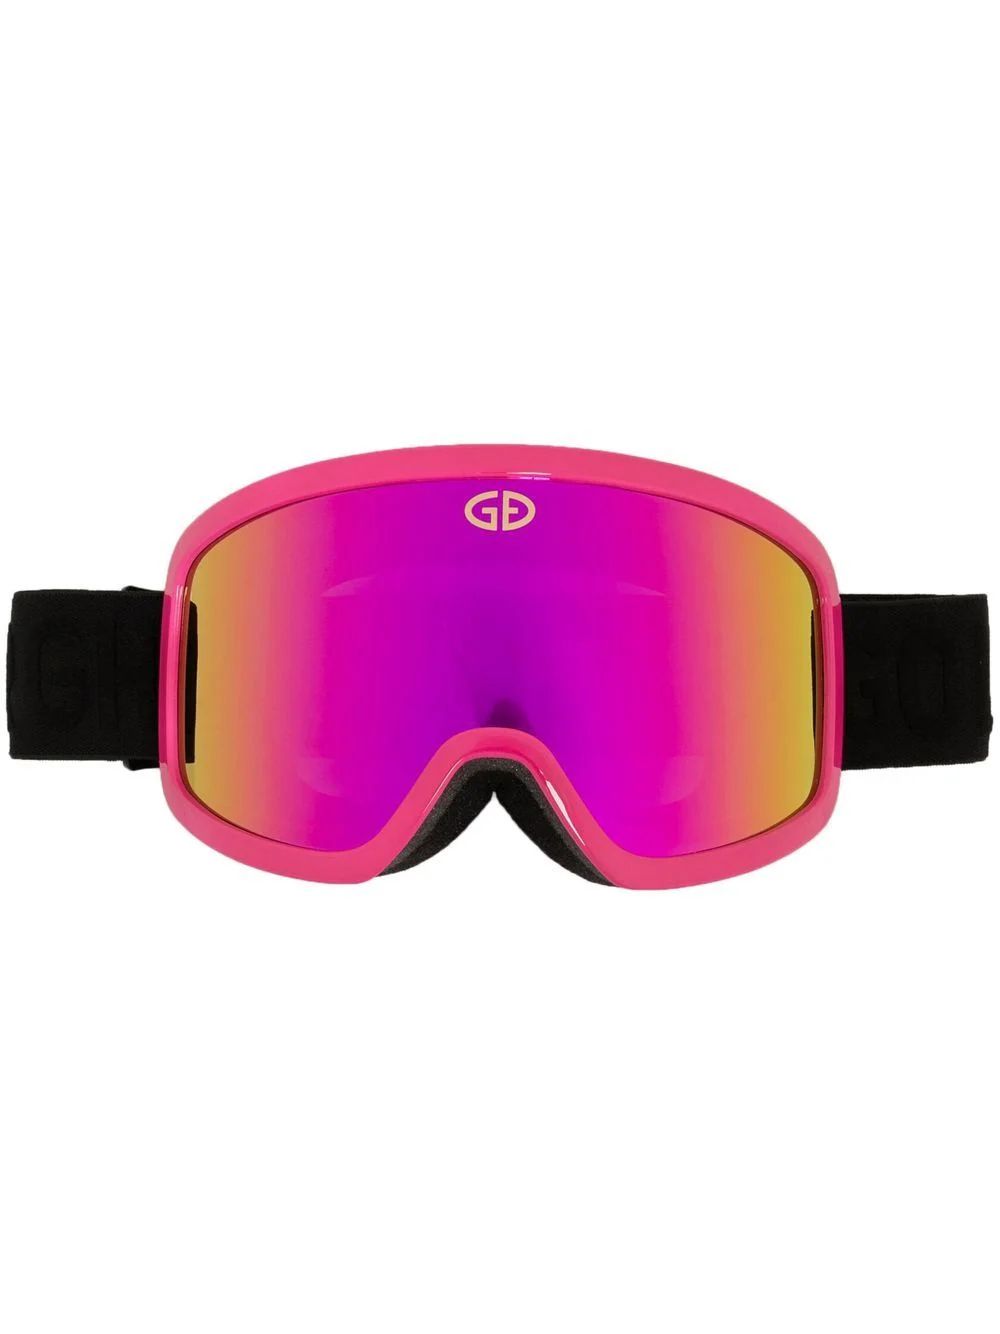 Goldbergh Mirrored Ski Goggles - Farfetch | Farfetch Global